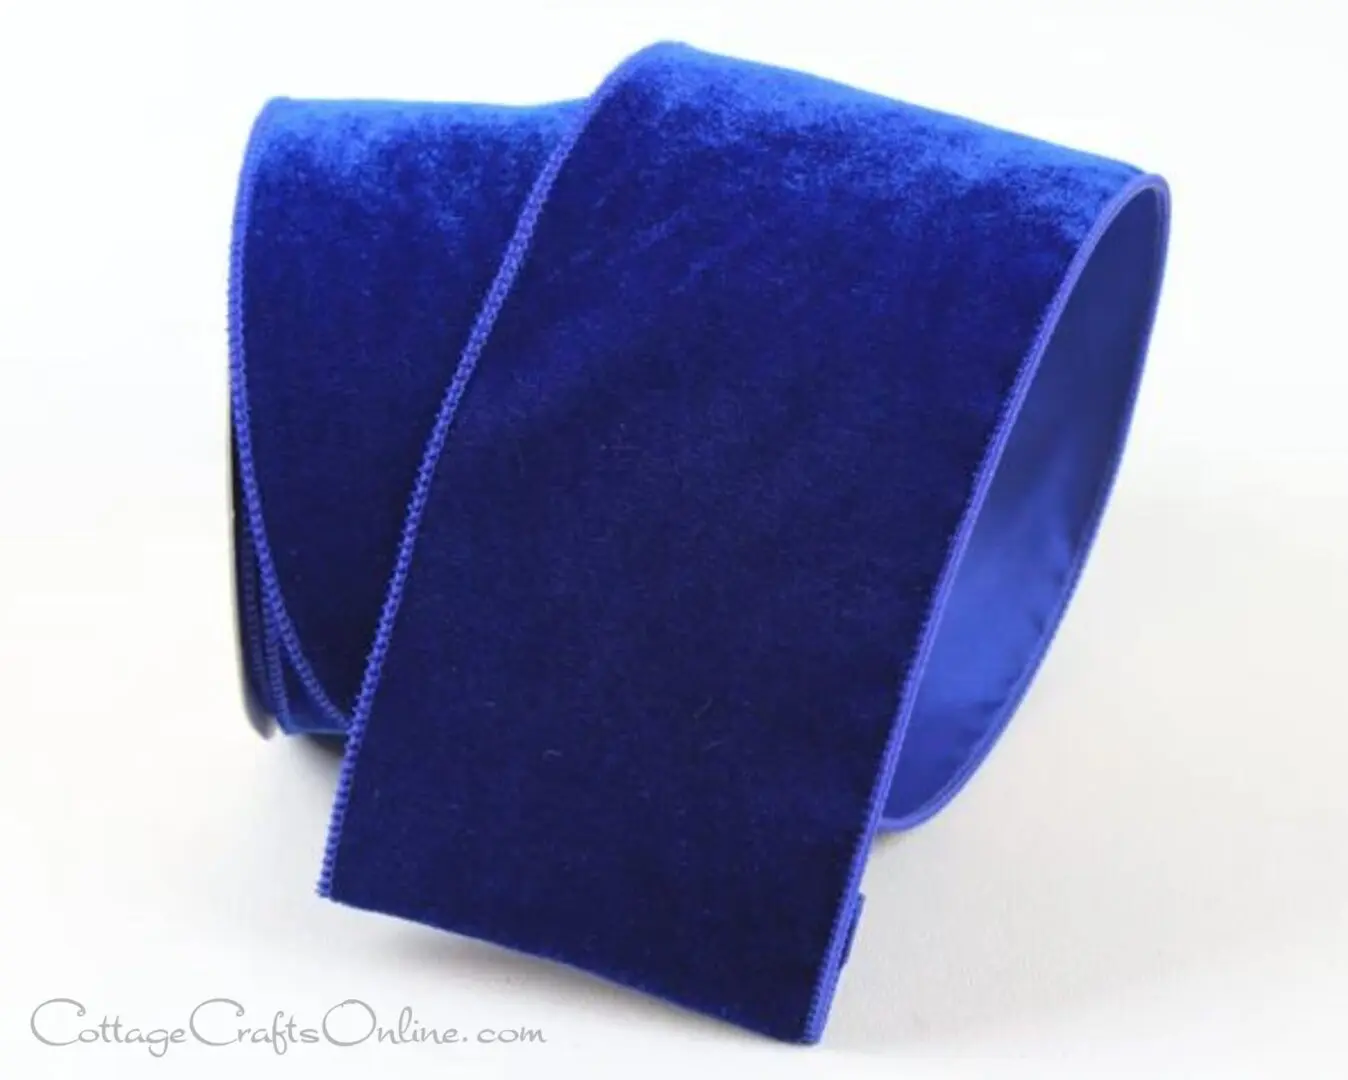 A blue velvet ribbon for the new holiday season.